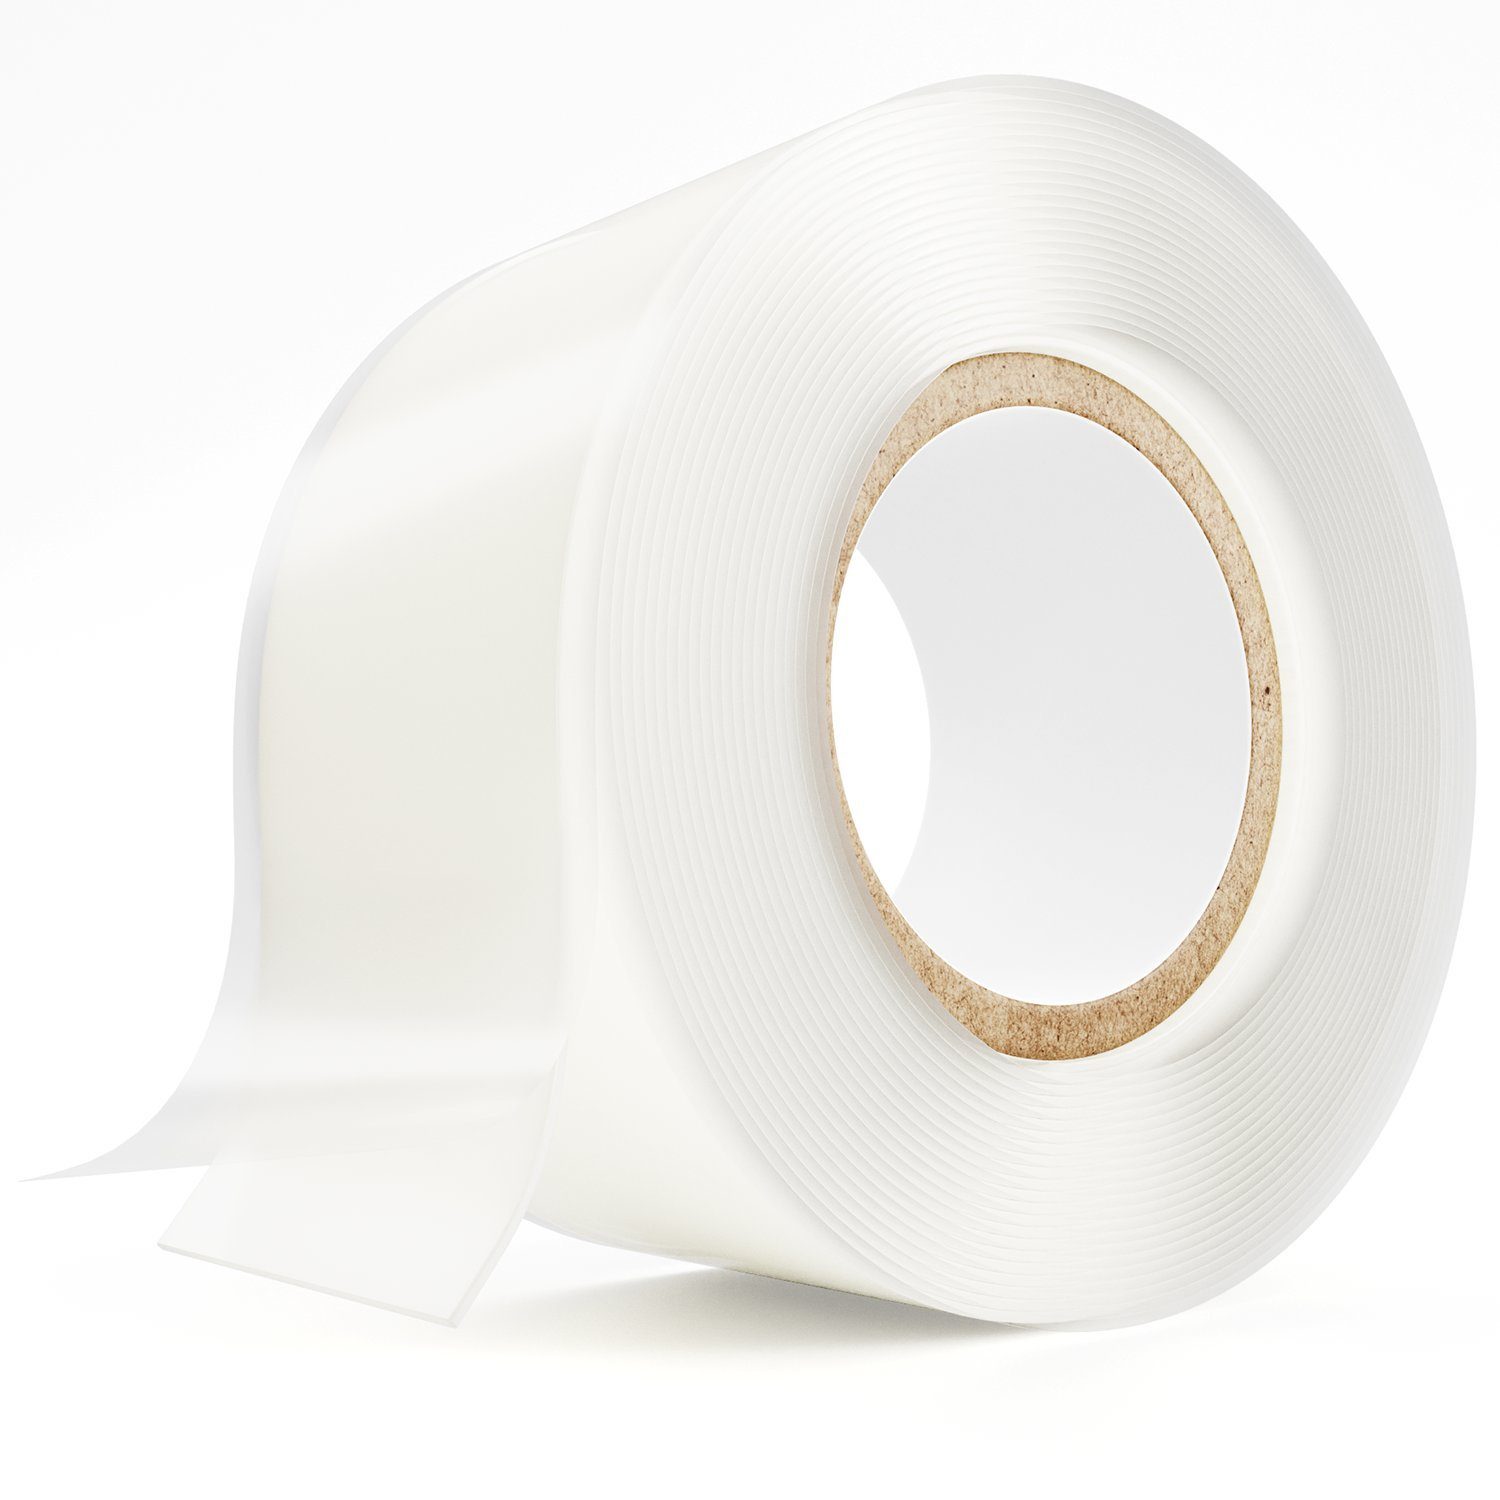 ABSINA Dichtband »selbstverschweißendes Isolierband 25 mm x 3 m -  Silikonband transparent für Wasser & Luft - Dichtungsband, Silikon Tape,  Reparaturband, Elektro, Isoband Elektriker, Industrieband« online kaufen |  OTTO